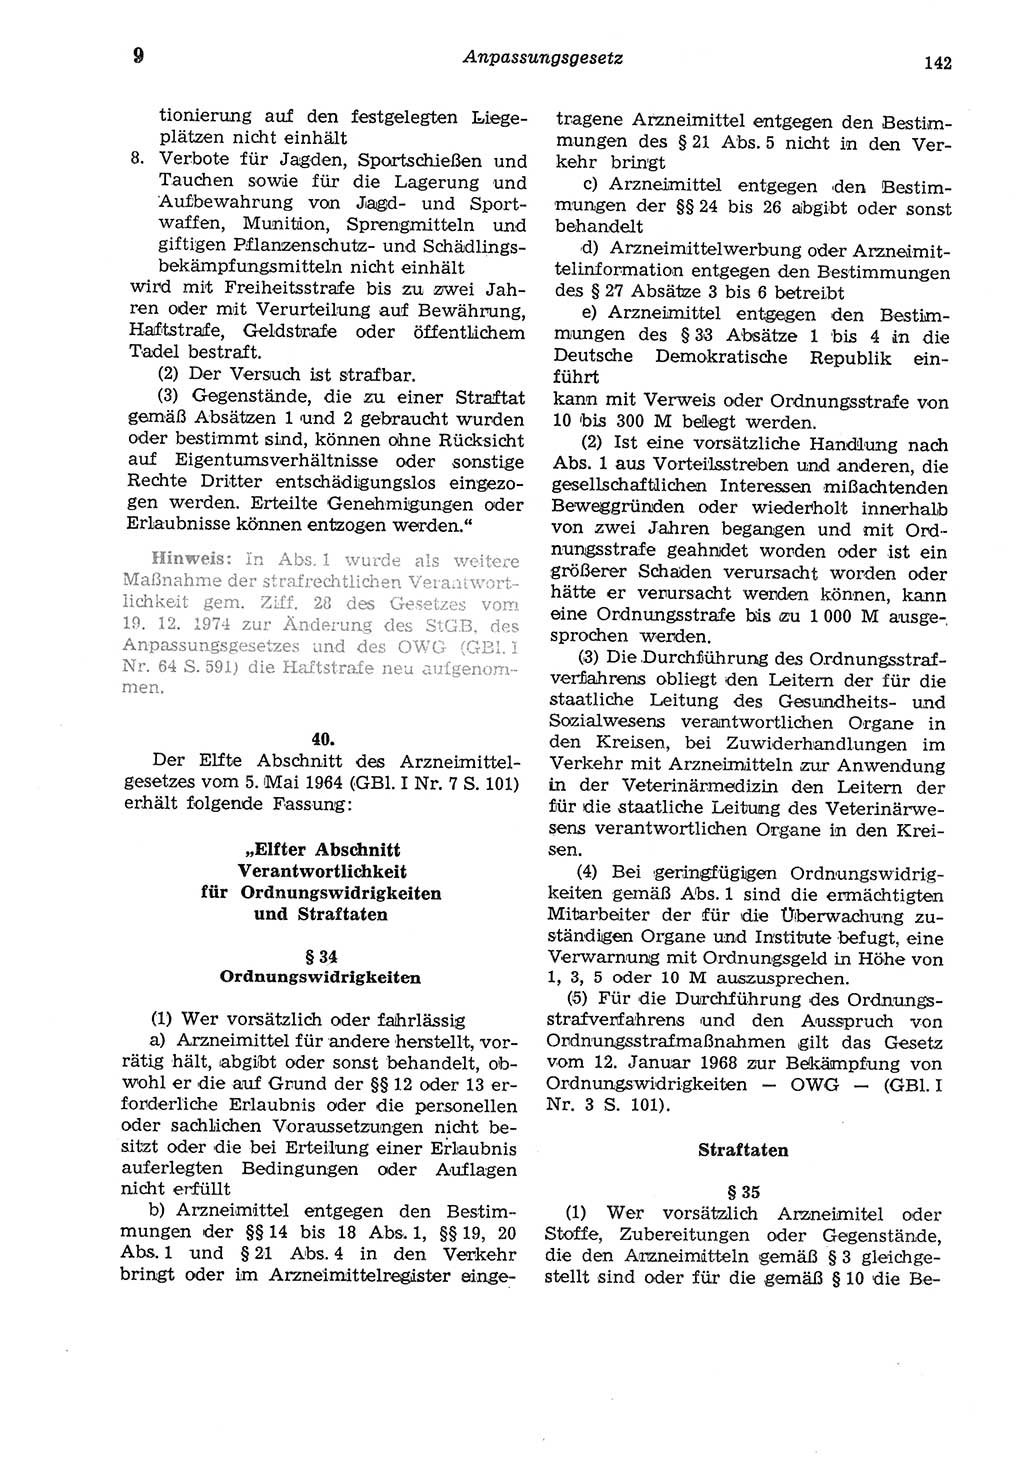 Strafgesetzbuch (StGB) der Deutschen Demokratischen Republik (DDR) und angrenzende Gesetze und Bestimmungen 1975, Seite 142 (StGB DDR Ges. Best. 1975, S. 142)